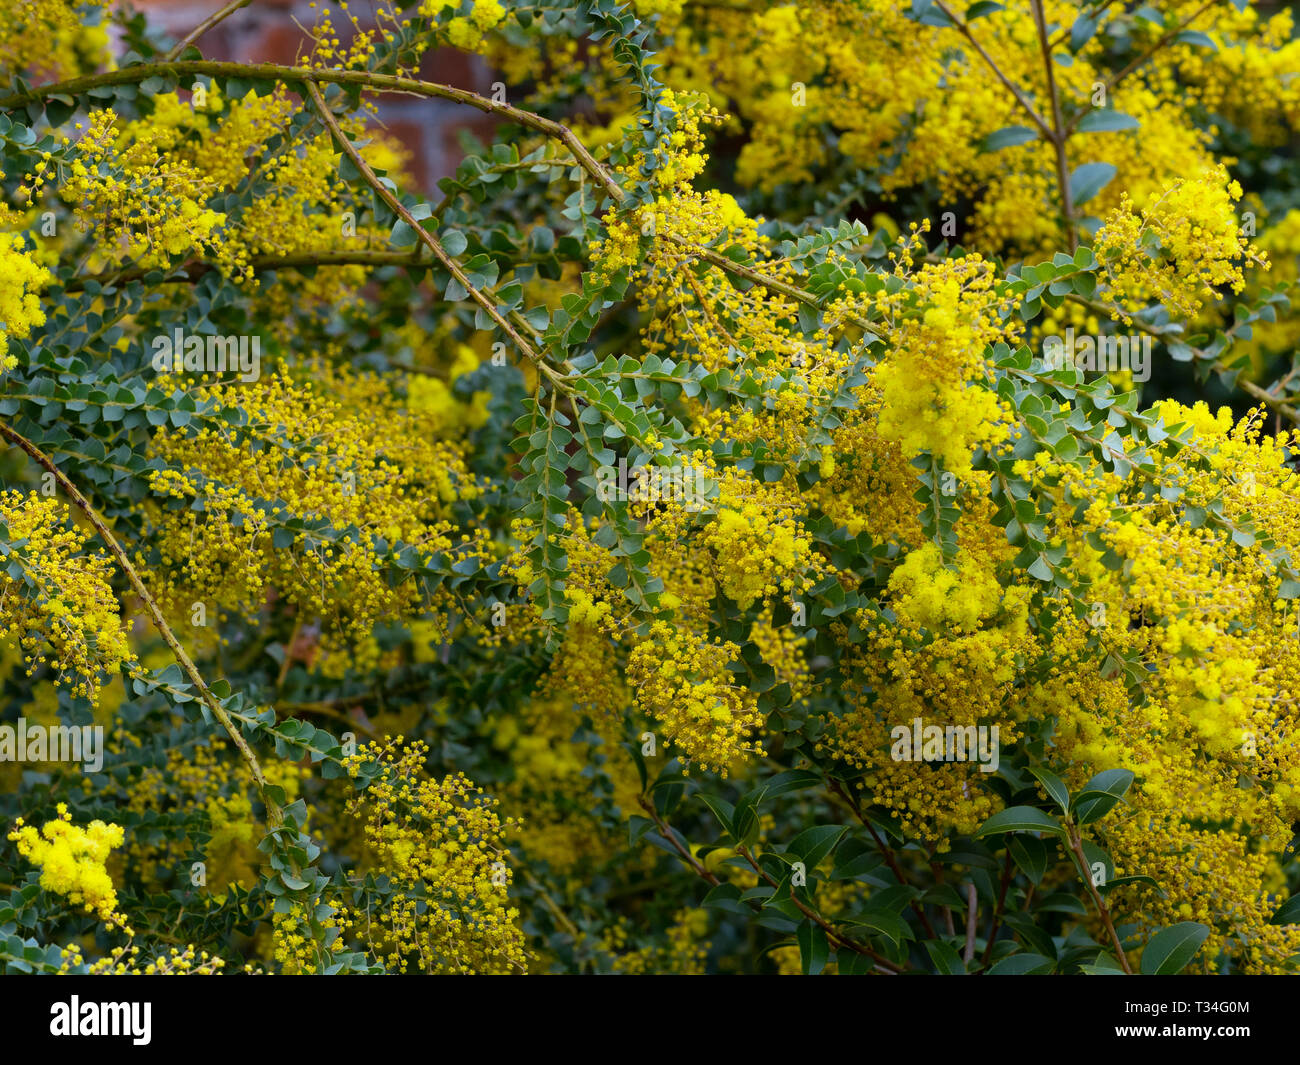 Der Backofen wattle Acacia pravissima wächst im Frühjahr Grenze Stockfoto